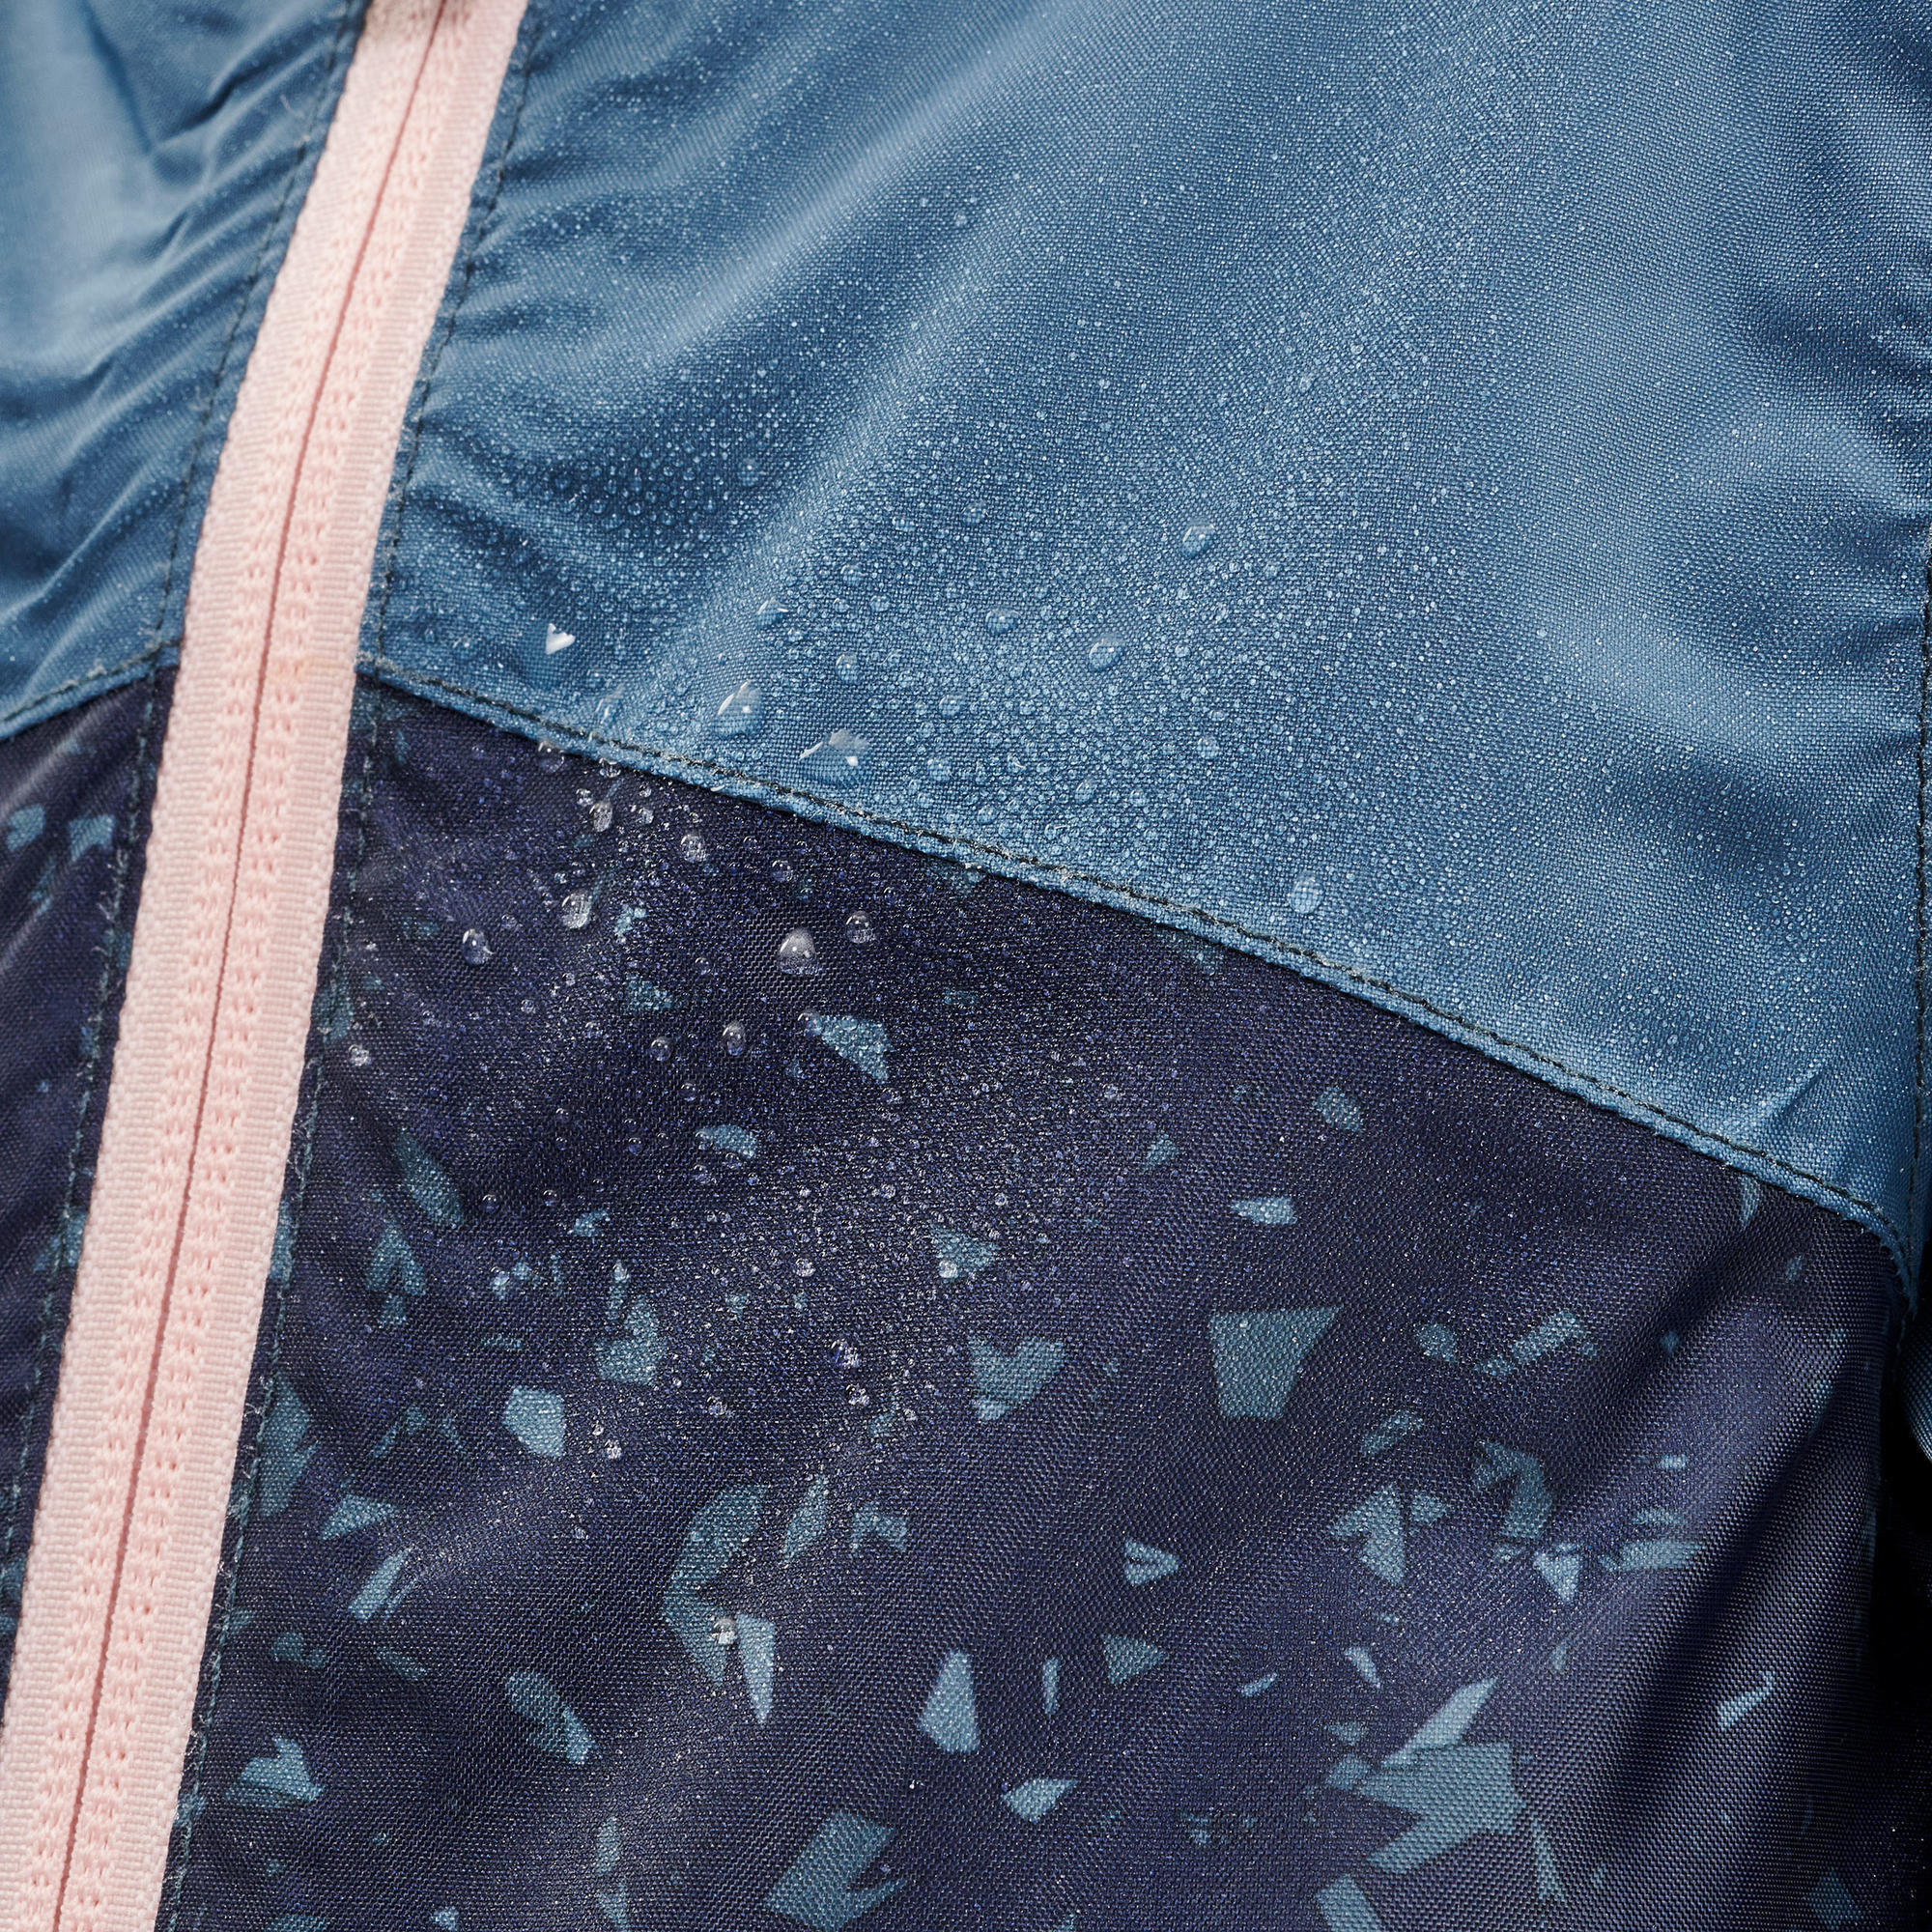 Kids’ Waterproof Hiking Jacket - MH100 Zip - Aged 2-6 3/8